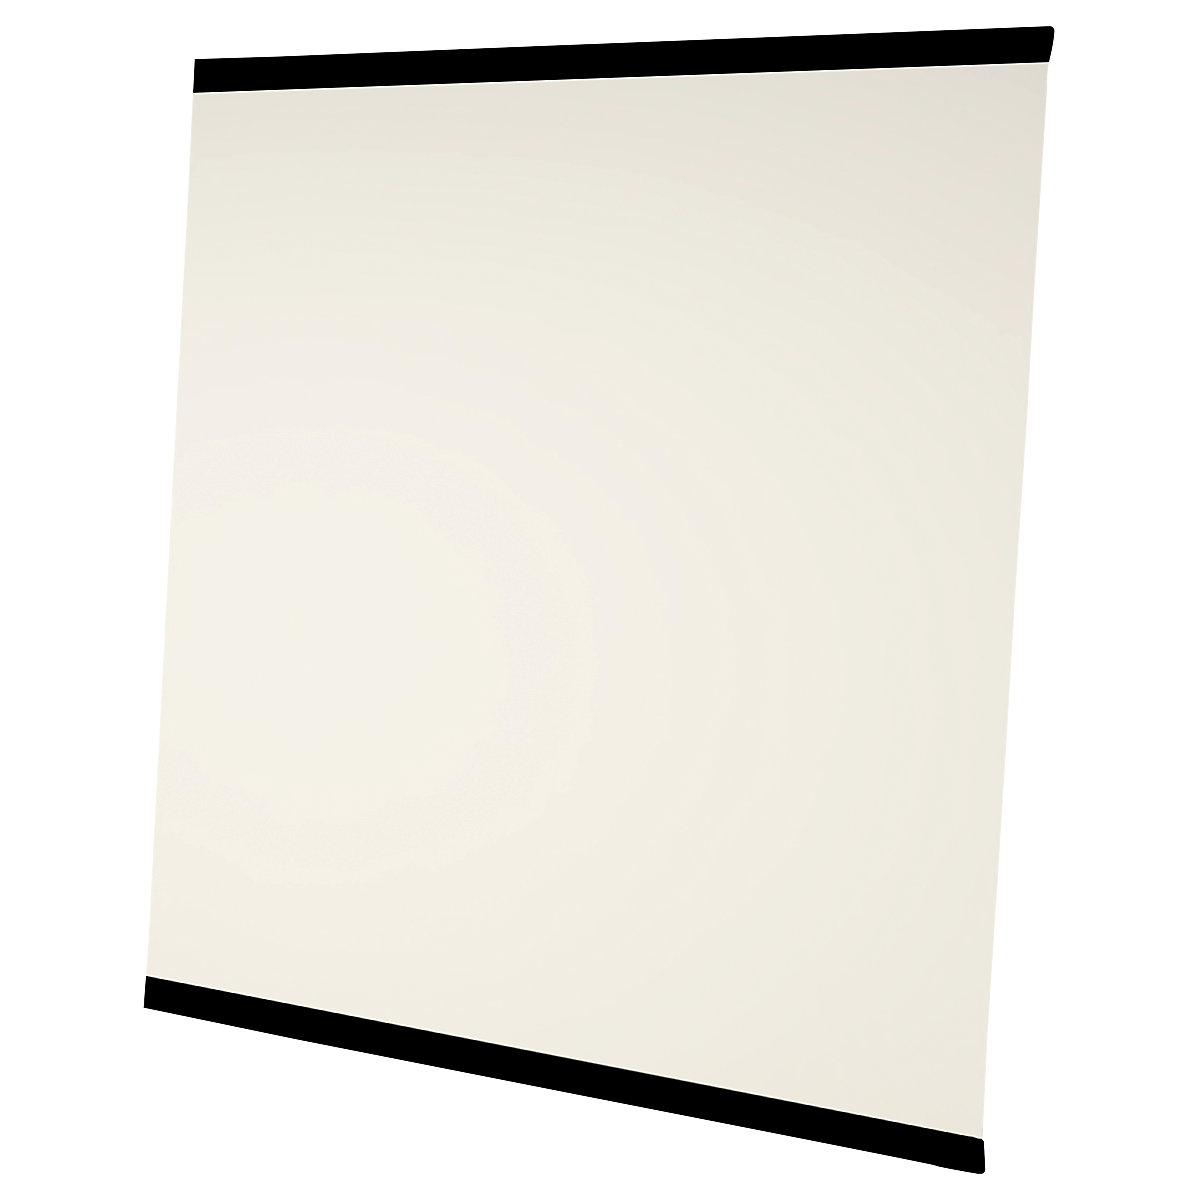 Quadro branco LEAN WALL, sem caixilho – Chameleon, esmaltado, branco, LxA 1960 x 2216 mm, 2 painéis-7